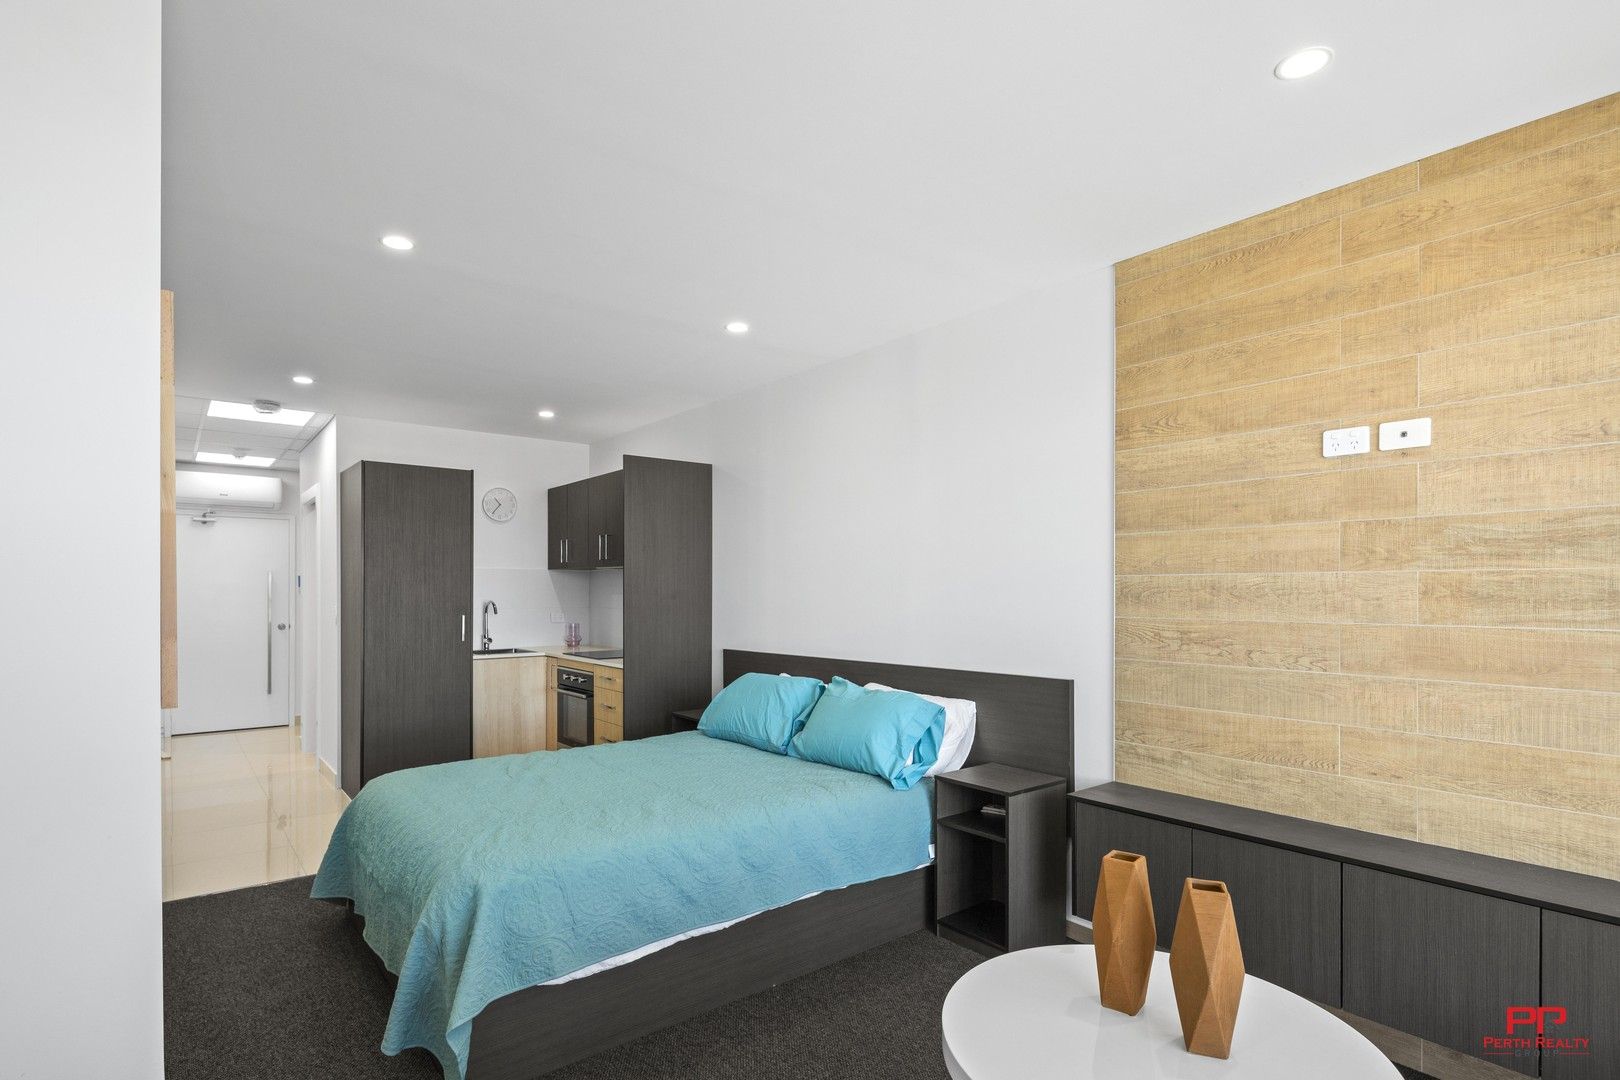 1 bedrooms Apartment / Unit / Flat in 3/32 Edward Street PERTH WA, 6000